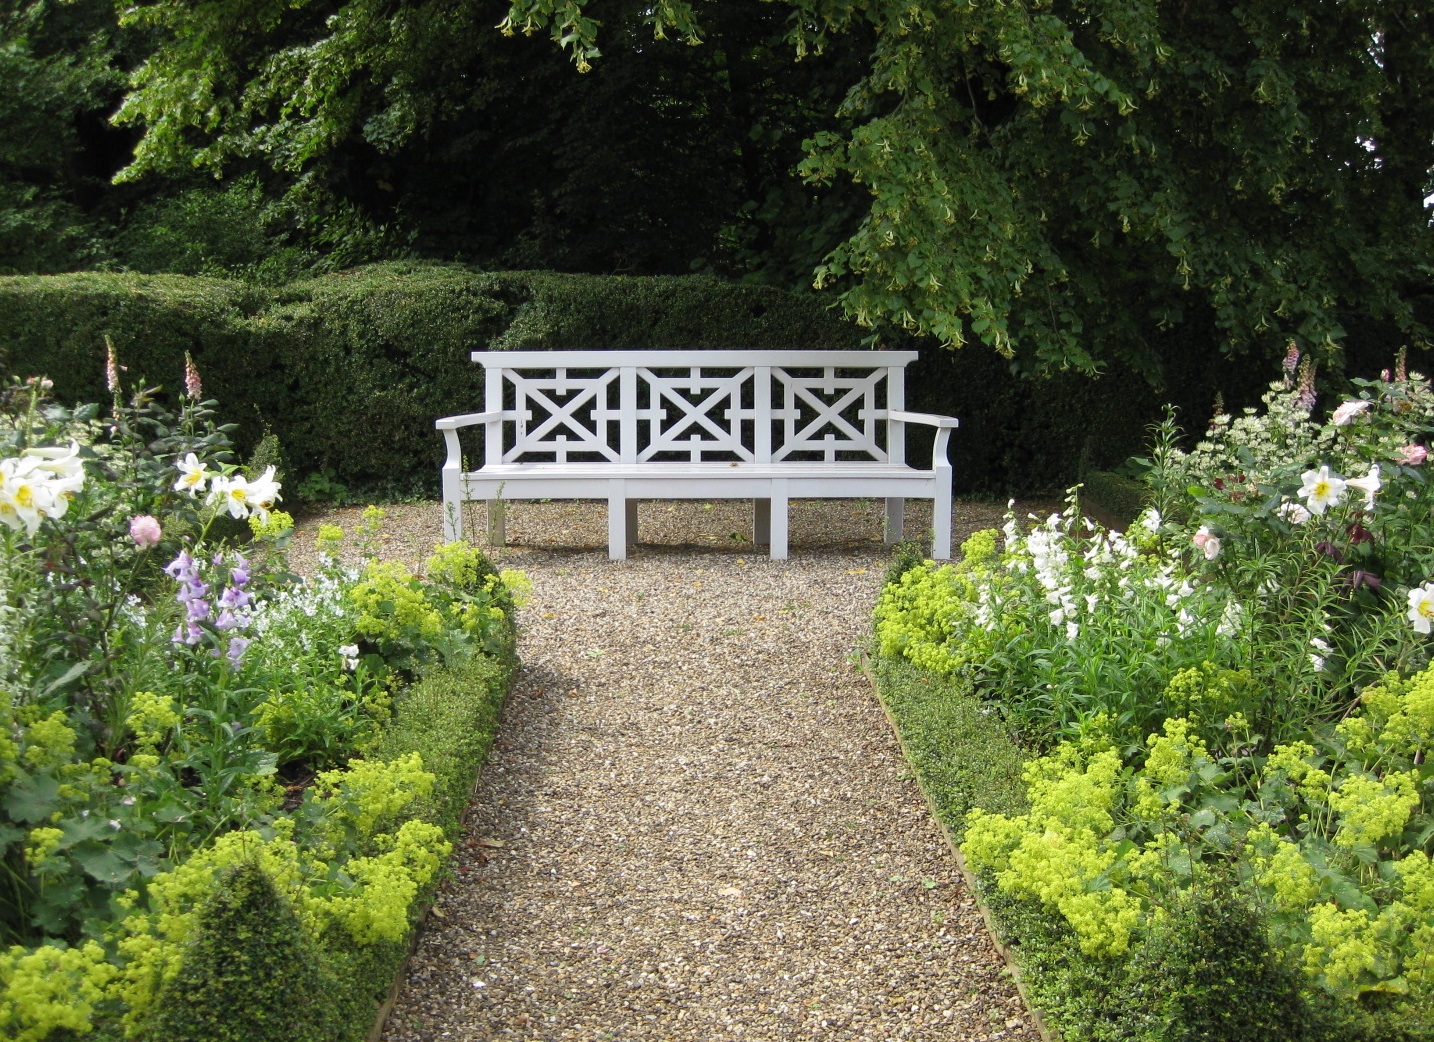 Скамейка как декоративный элемент сада – типы, параметры, виды, материалы